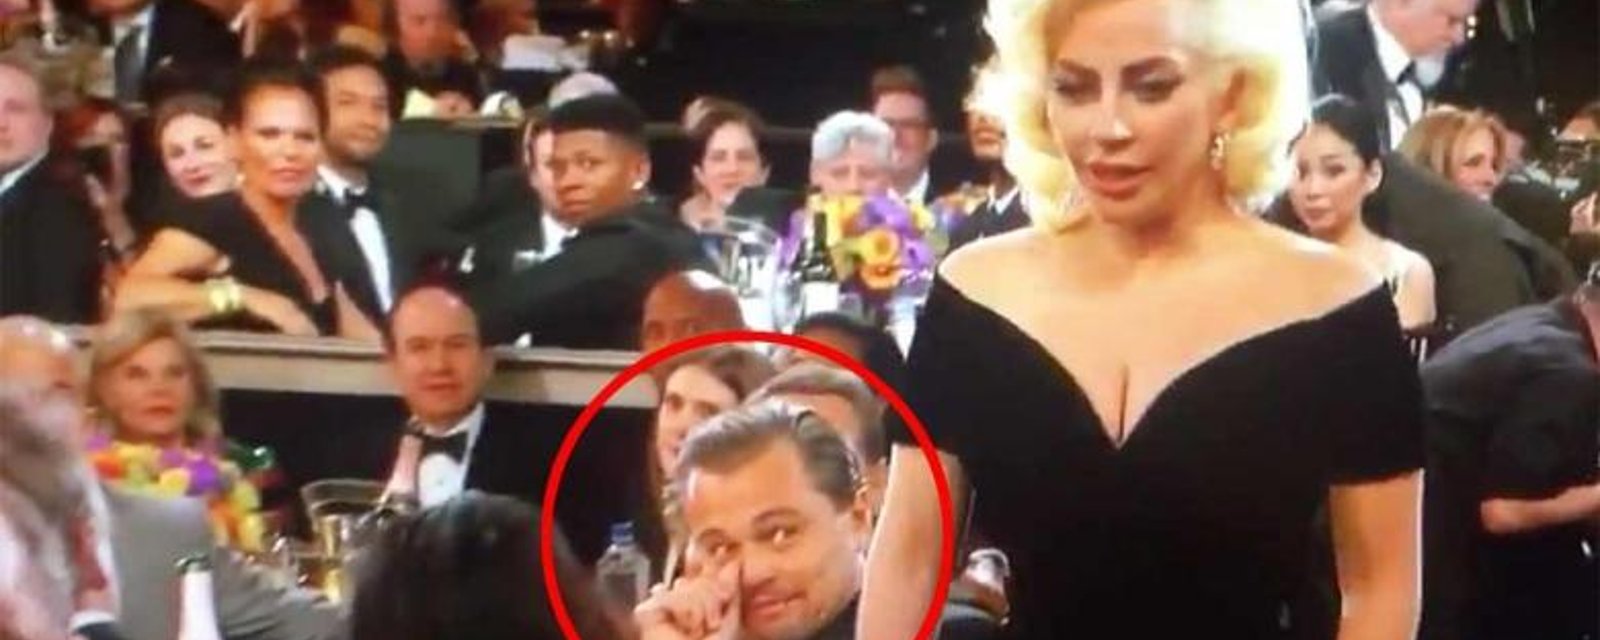 La réaction de Leonardo DiCaprio à la victoire de Lady Gaga n'a pas de prix!